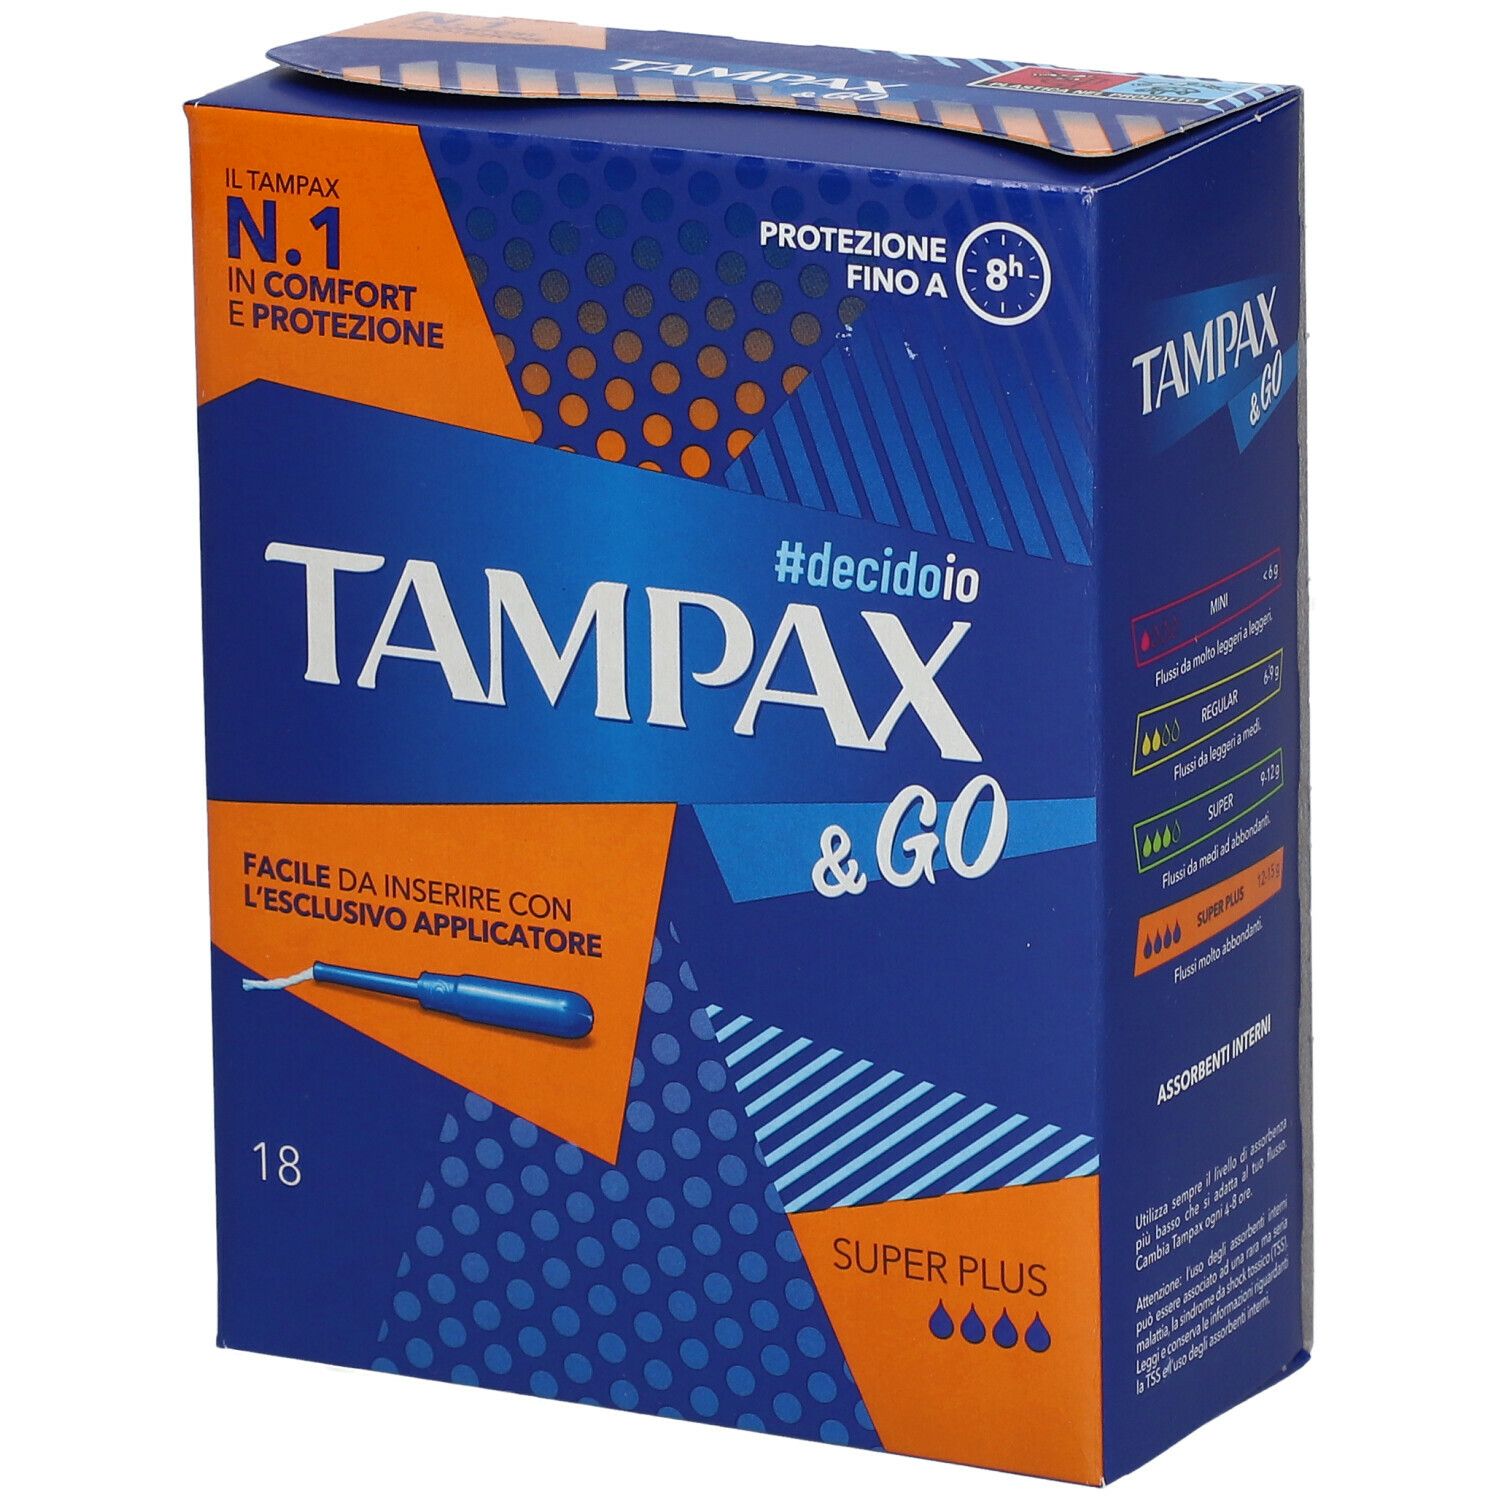 Image of Tampax & Go Tamponi Super Plus